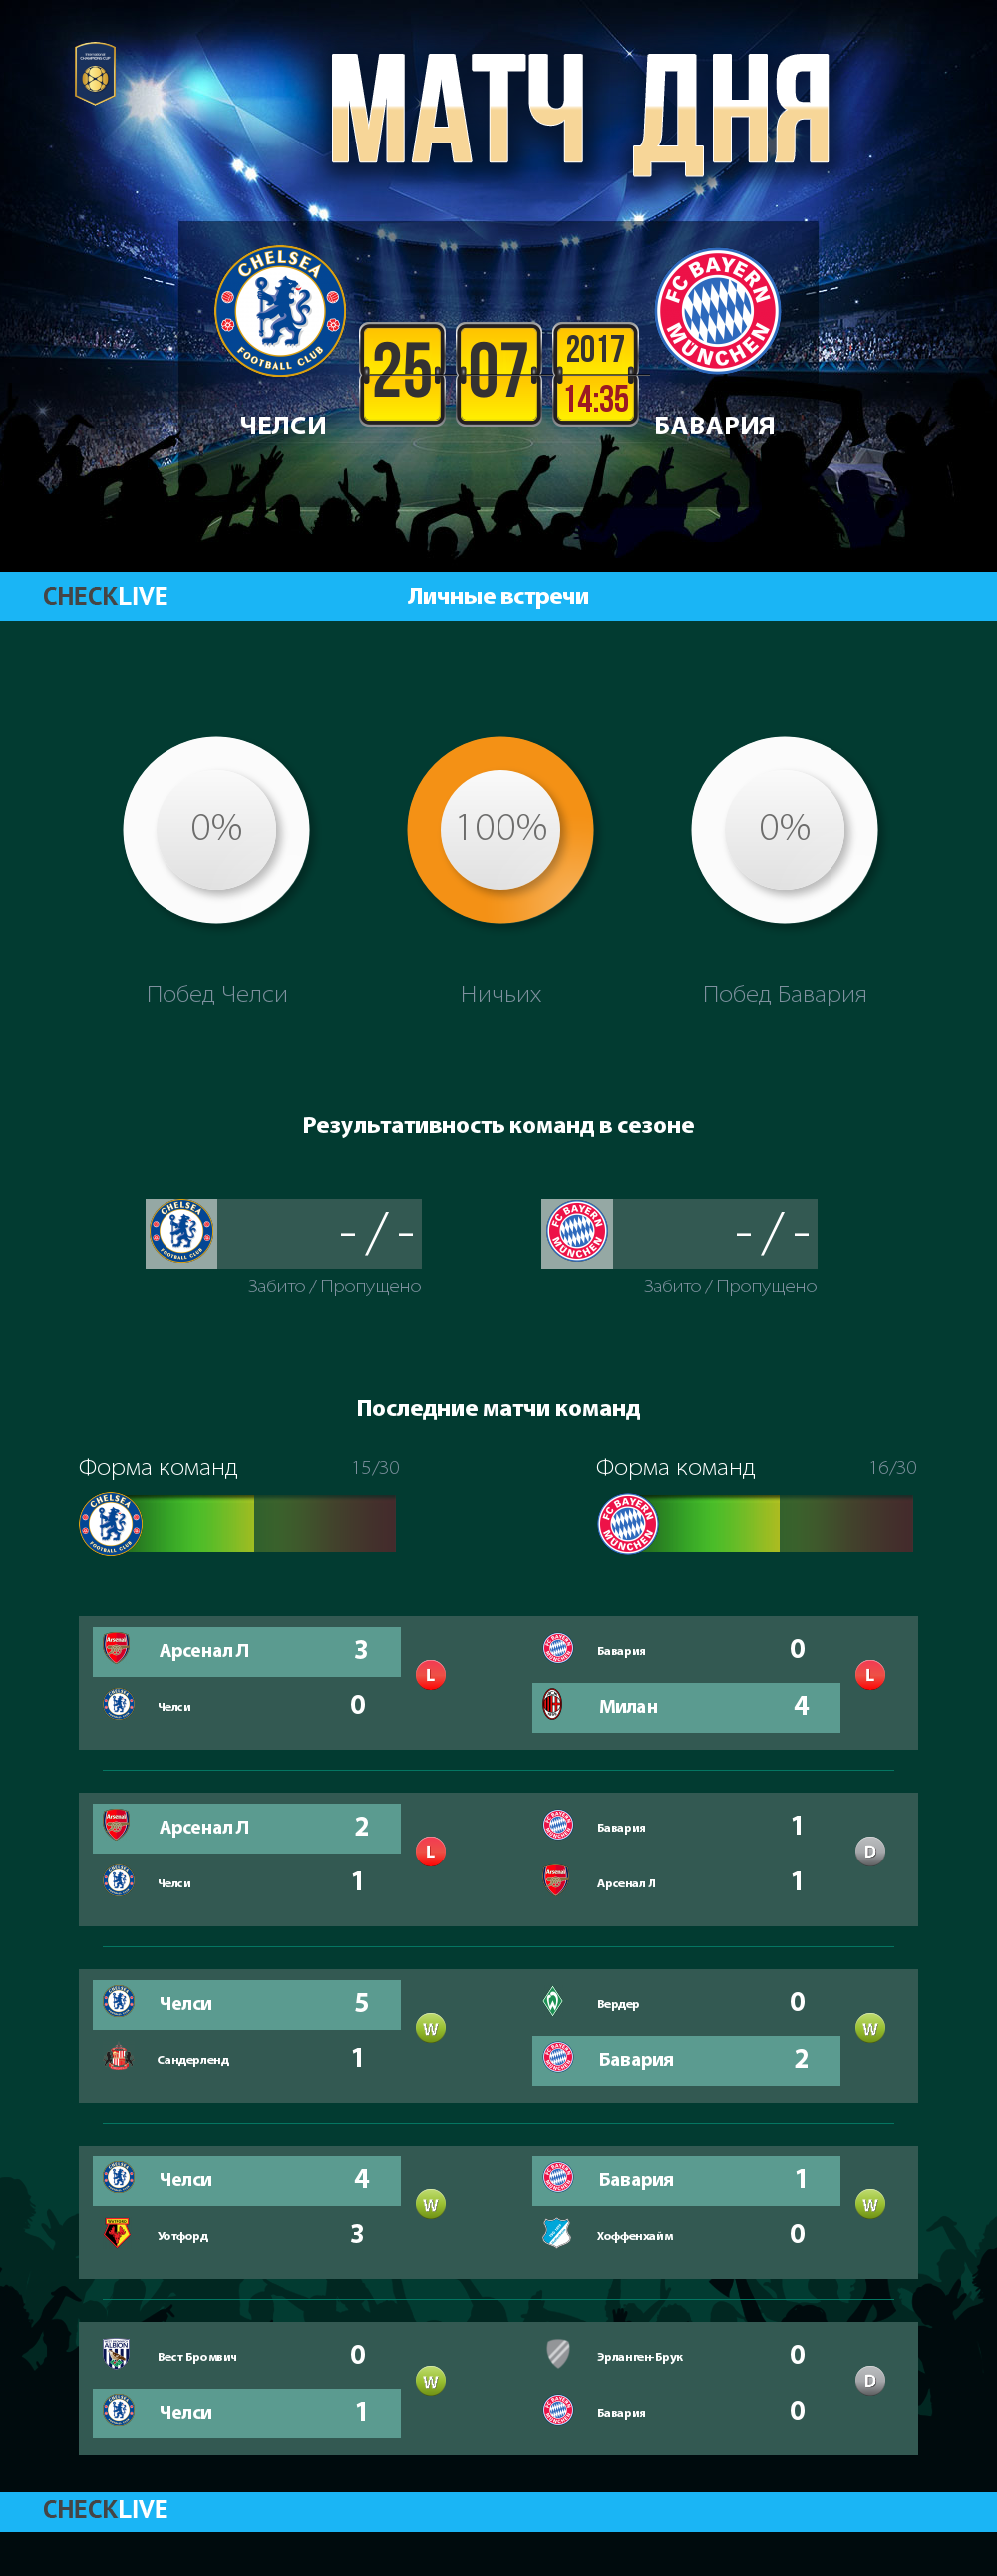 Инфографика Челси и Бавария матч дня 25.07.2017